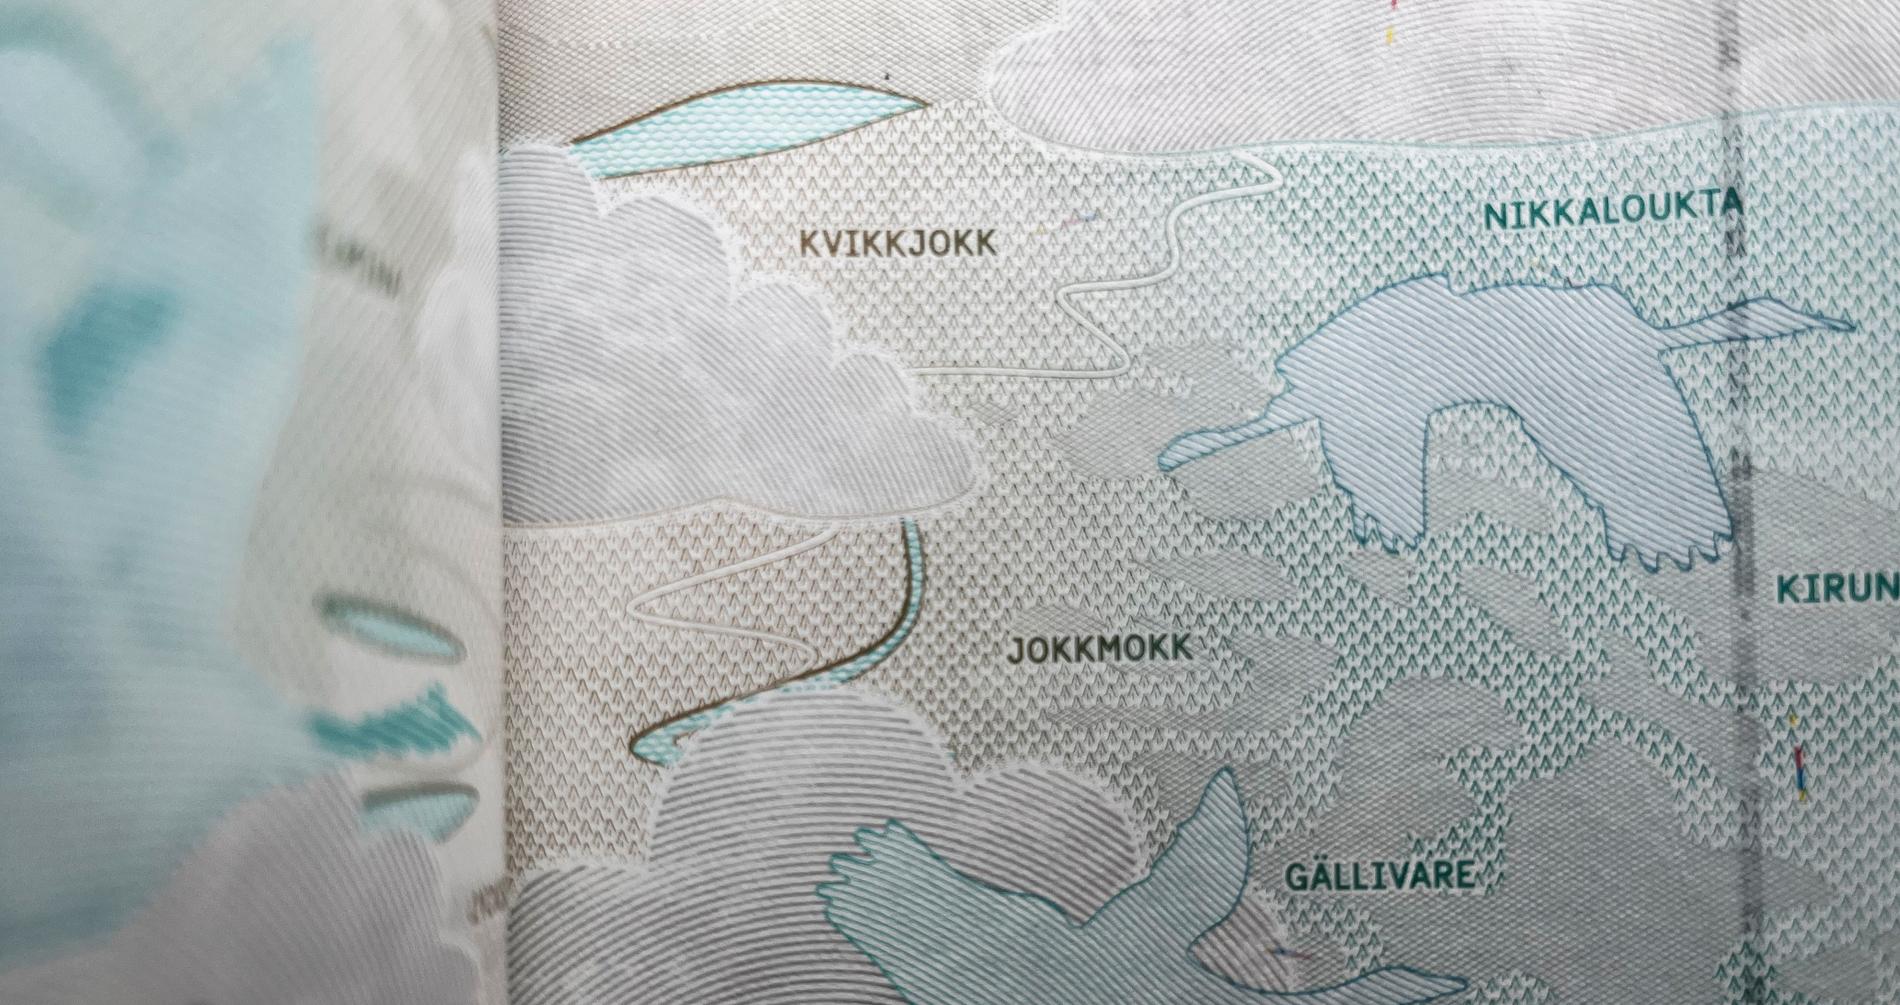 I de svenska passen har bokstäverna u och o i Nikkaluokta bytt plats.